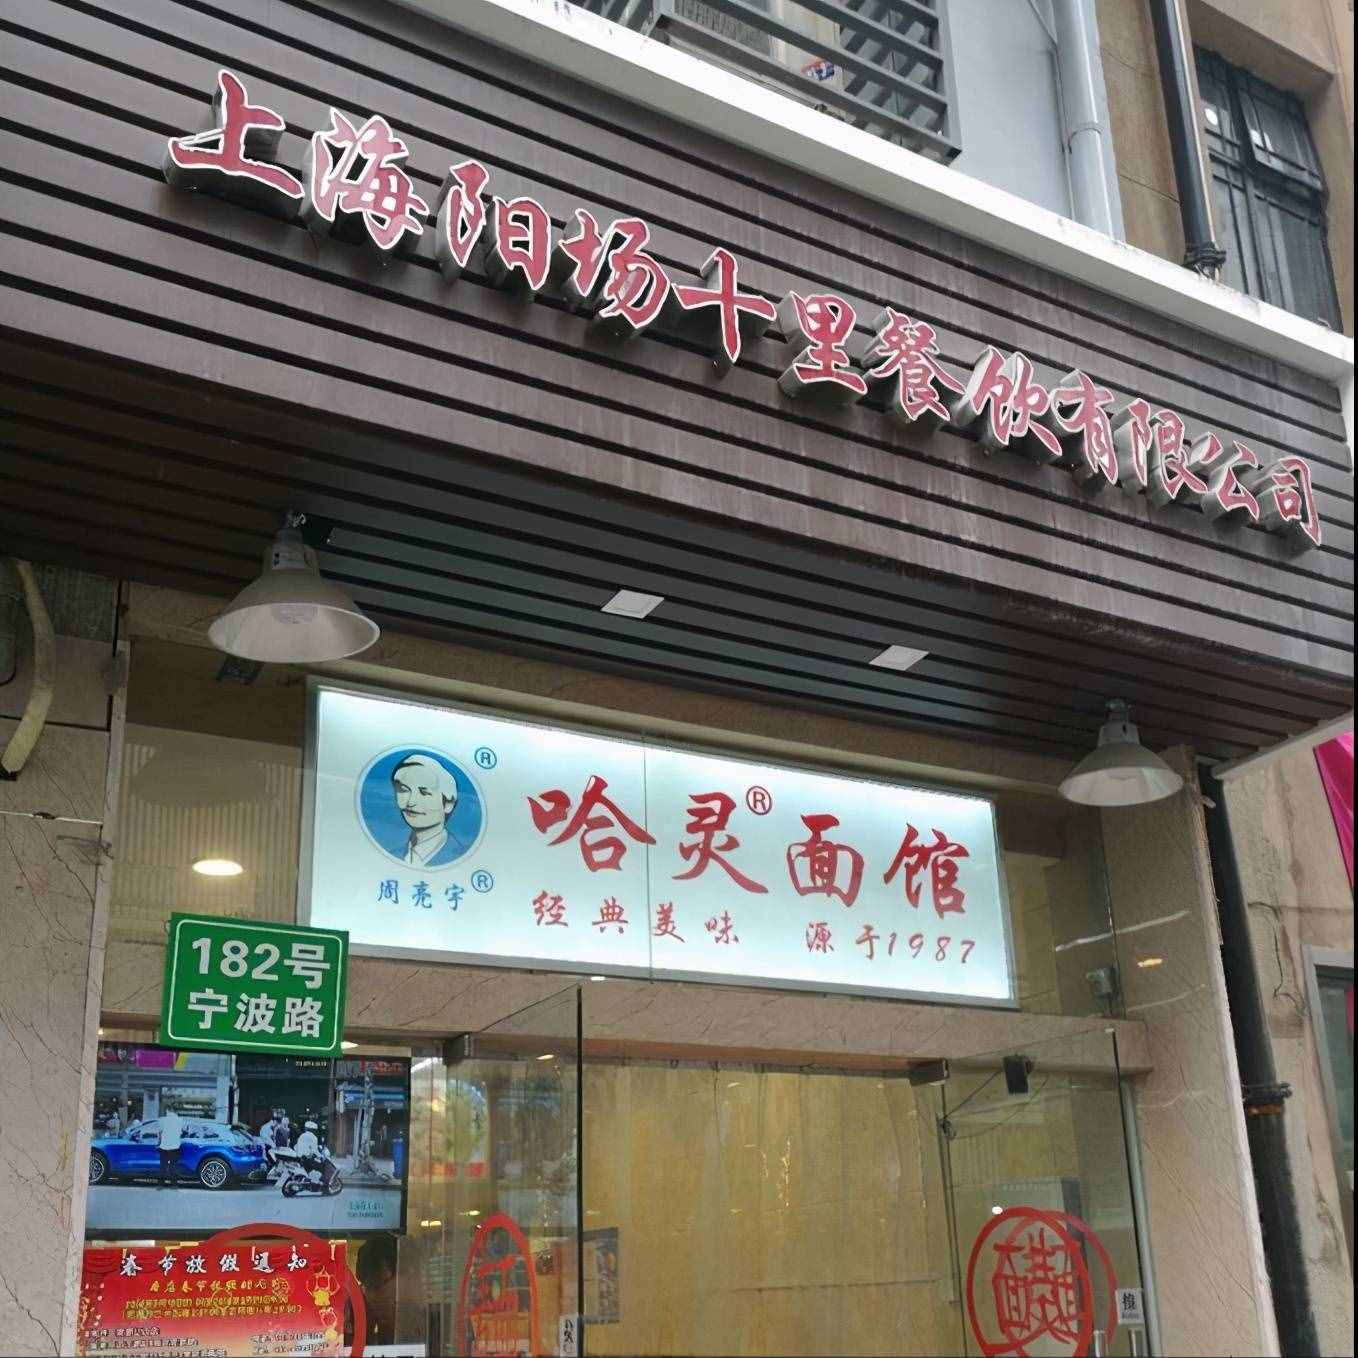 上海南京路这条美食街，承包我一个月的早餐，别再找南翔小笼了